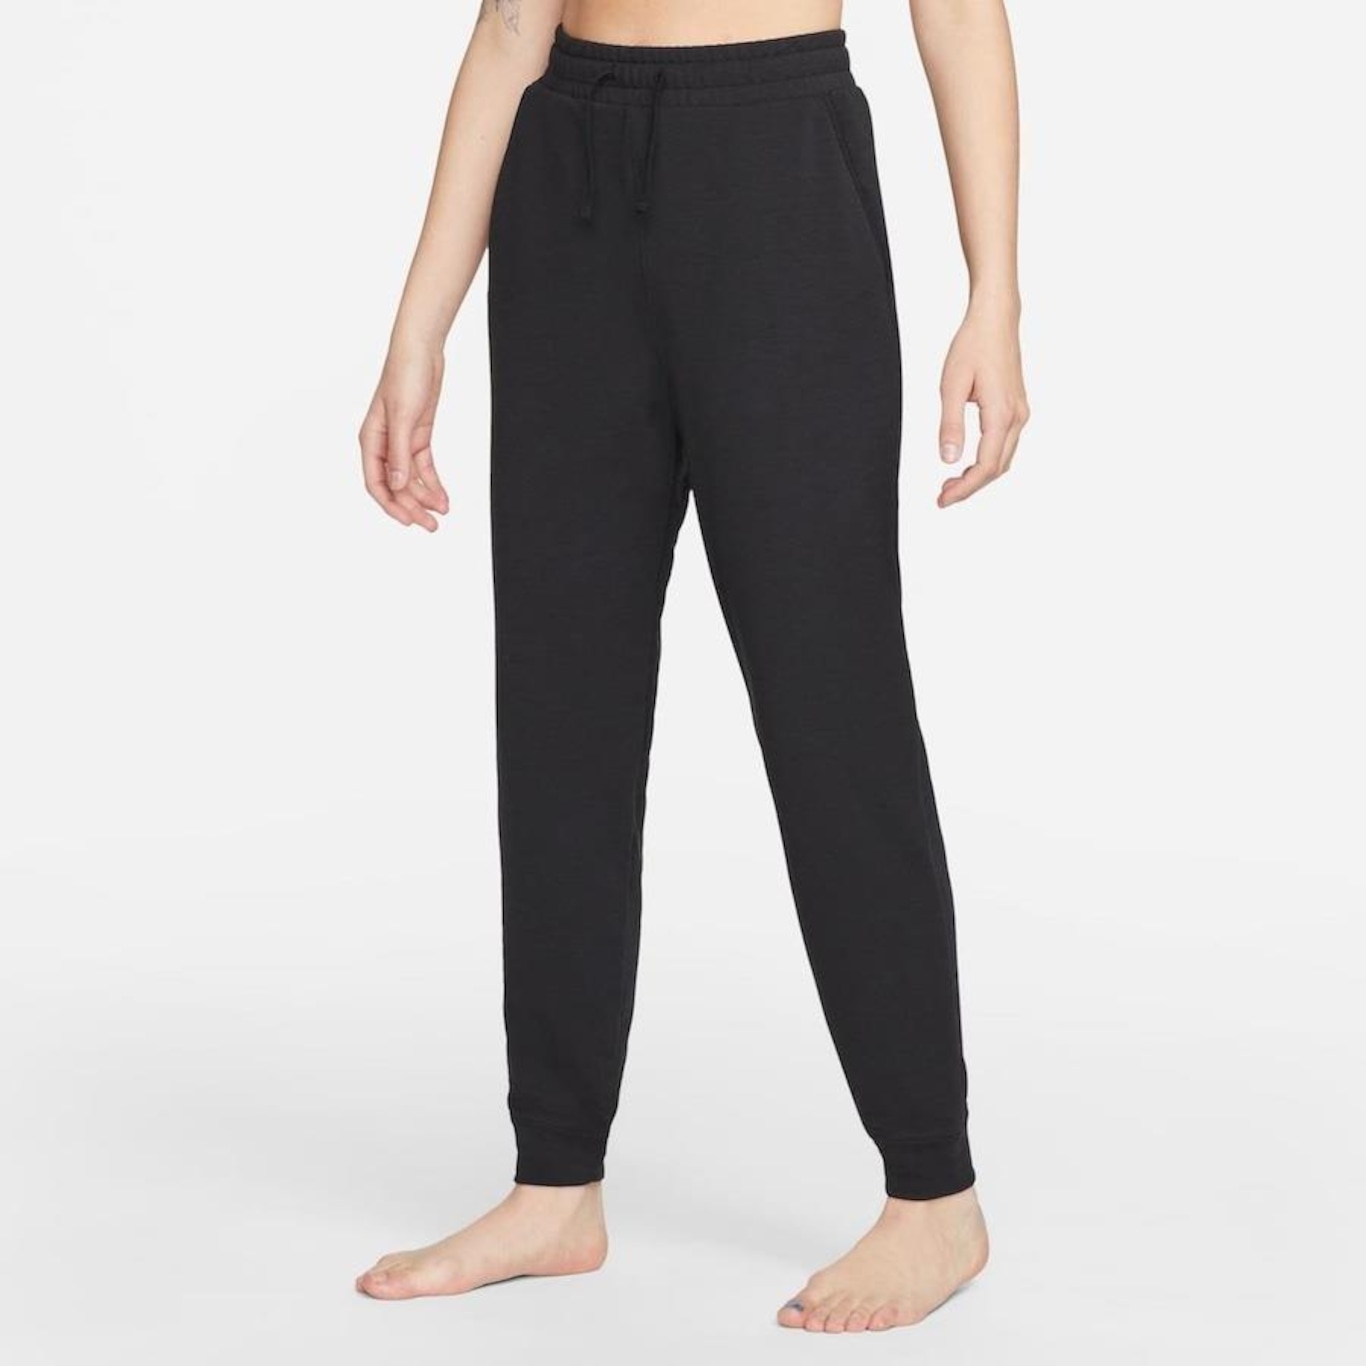 Nike Yoga Dri-FIT Pants Black / Grey The Nike Yoga Dri-FIT Pants